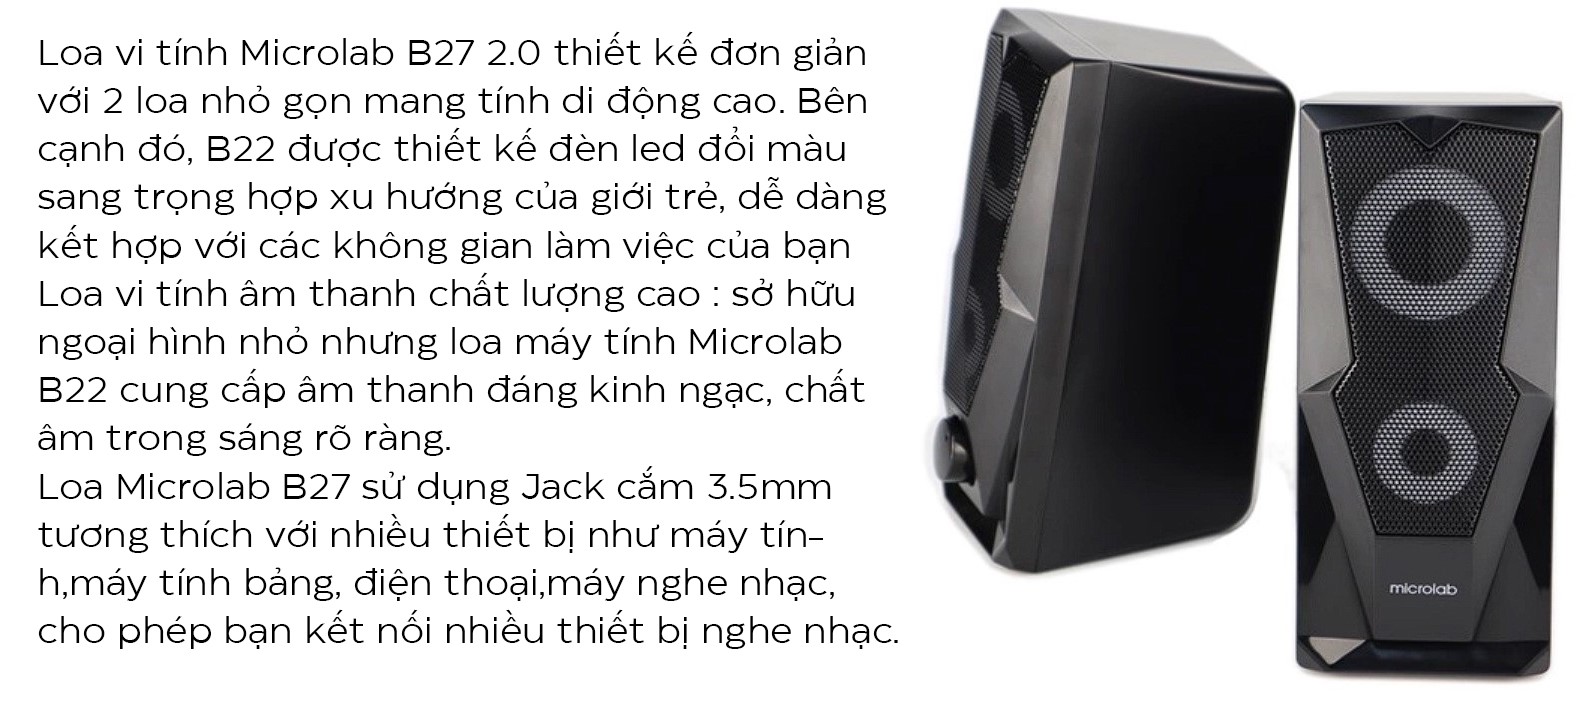 Loa Microlab B27 2.0